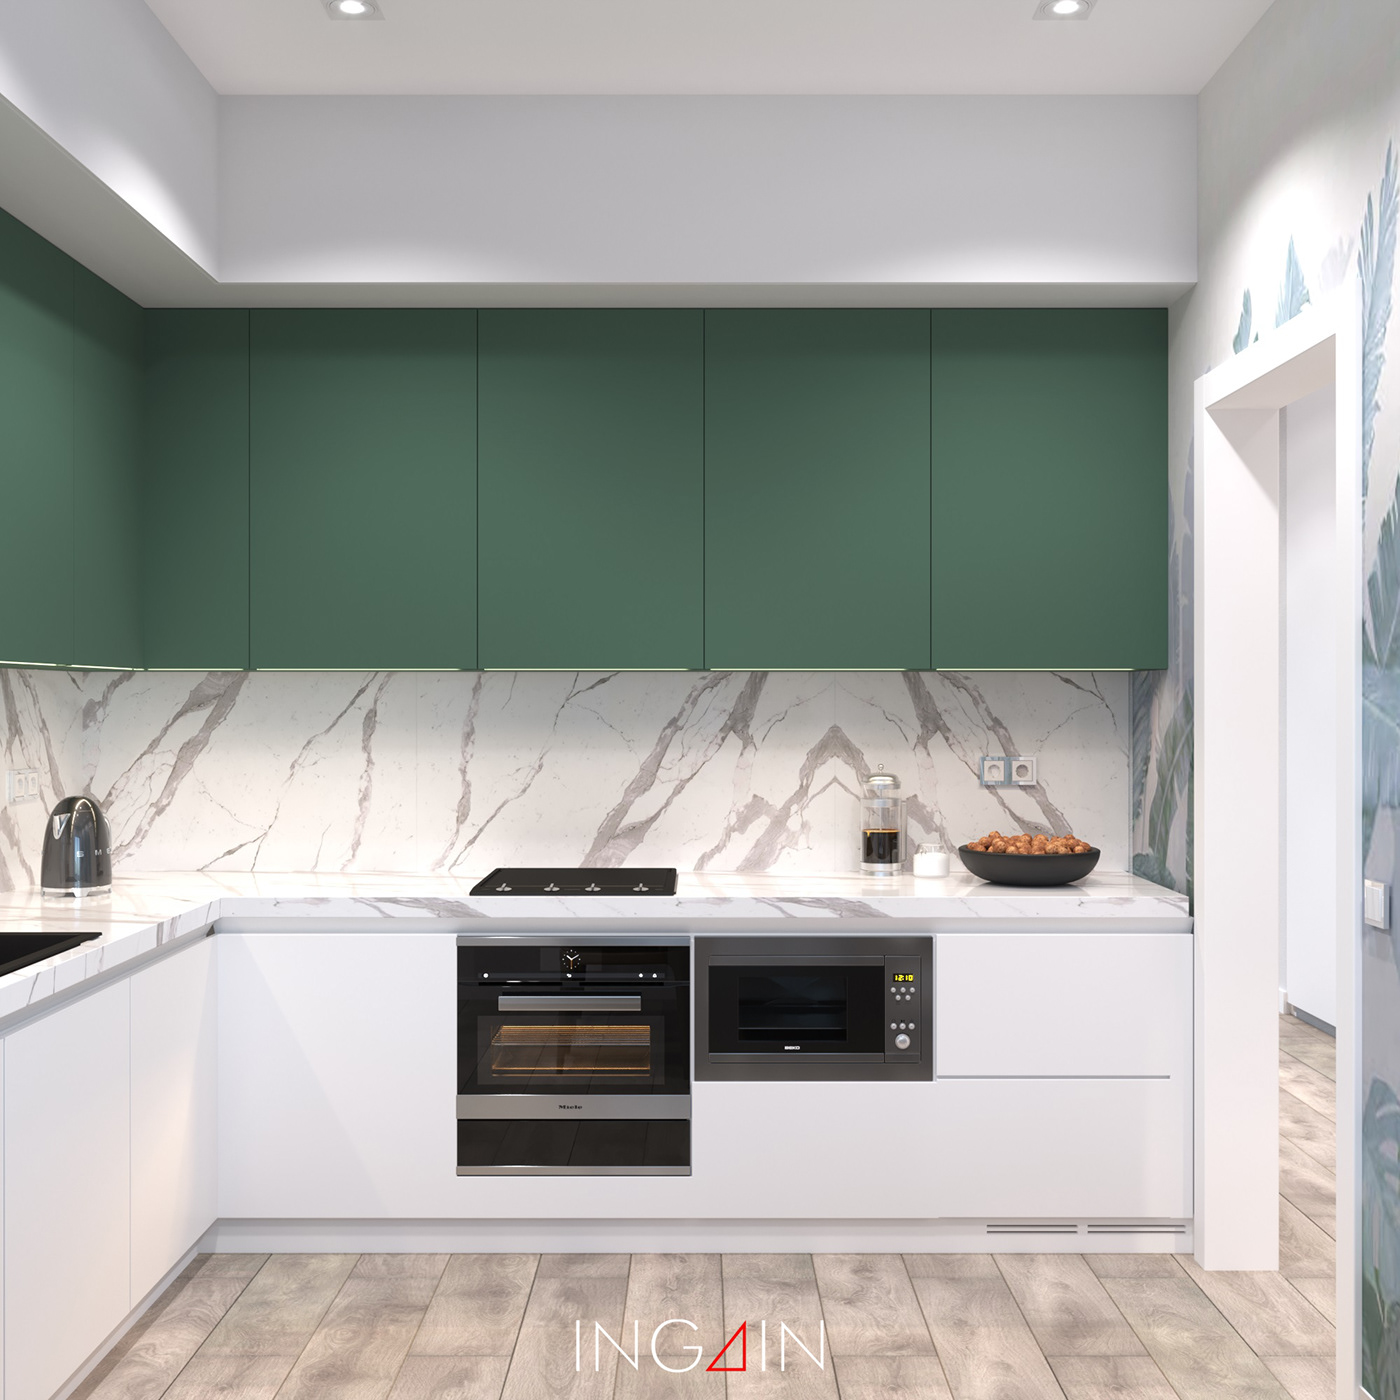 таунхаус зеленая кухня современный стиль дизайн интерьера дома два этажа светлый интерьер светлый санузел светлая ванная синяя стена